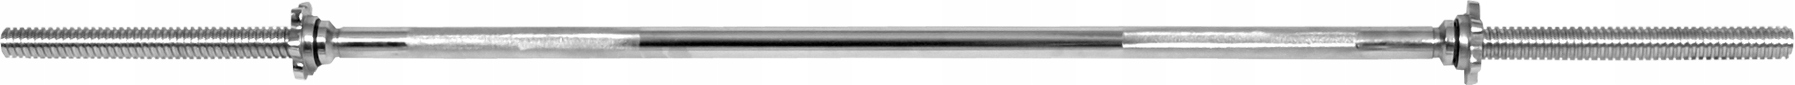 Gryf prosty śrubowy AbarQs 1 cm / 1 mm